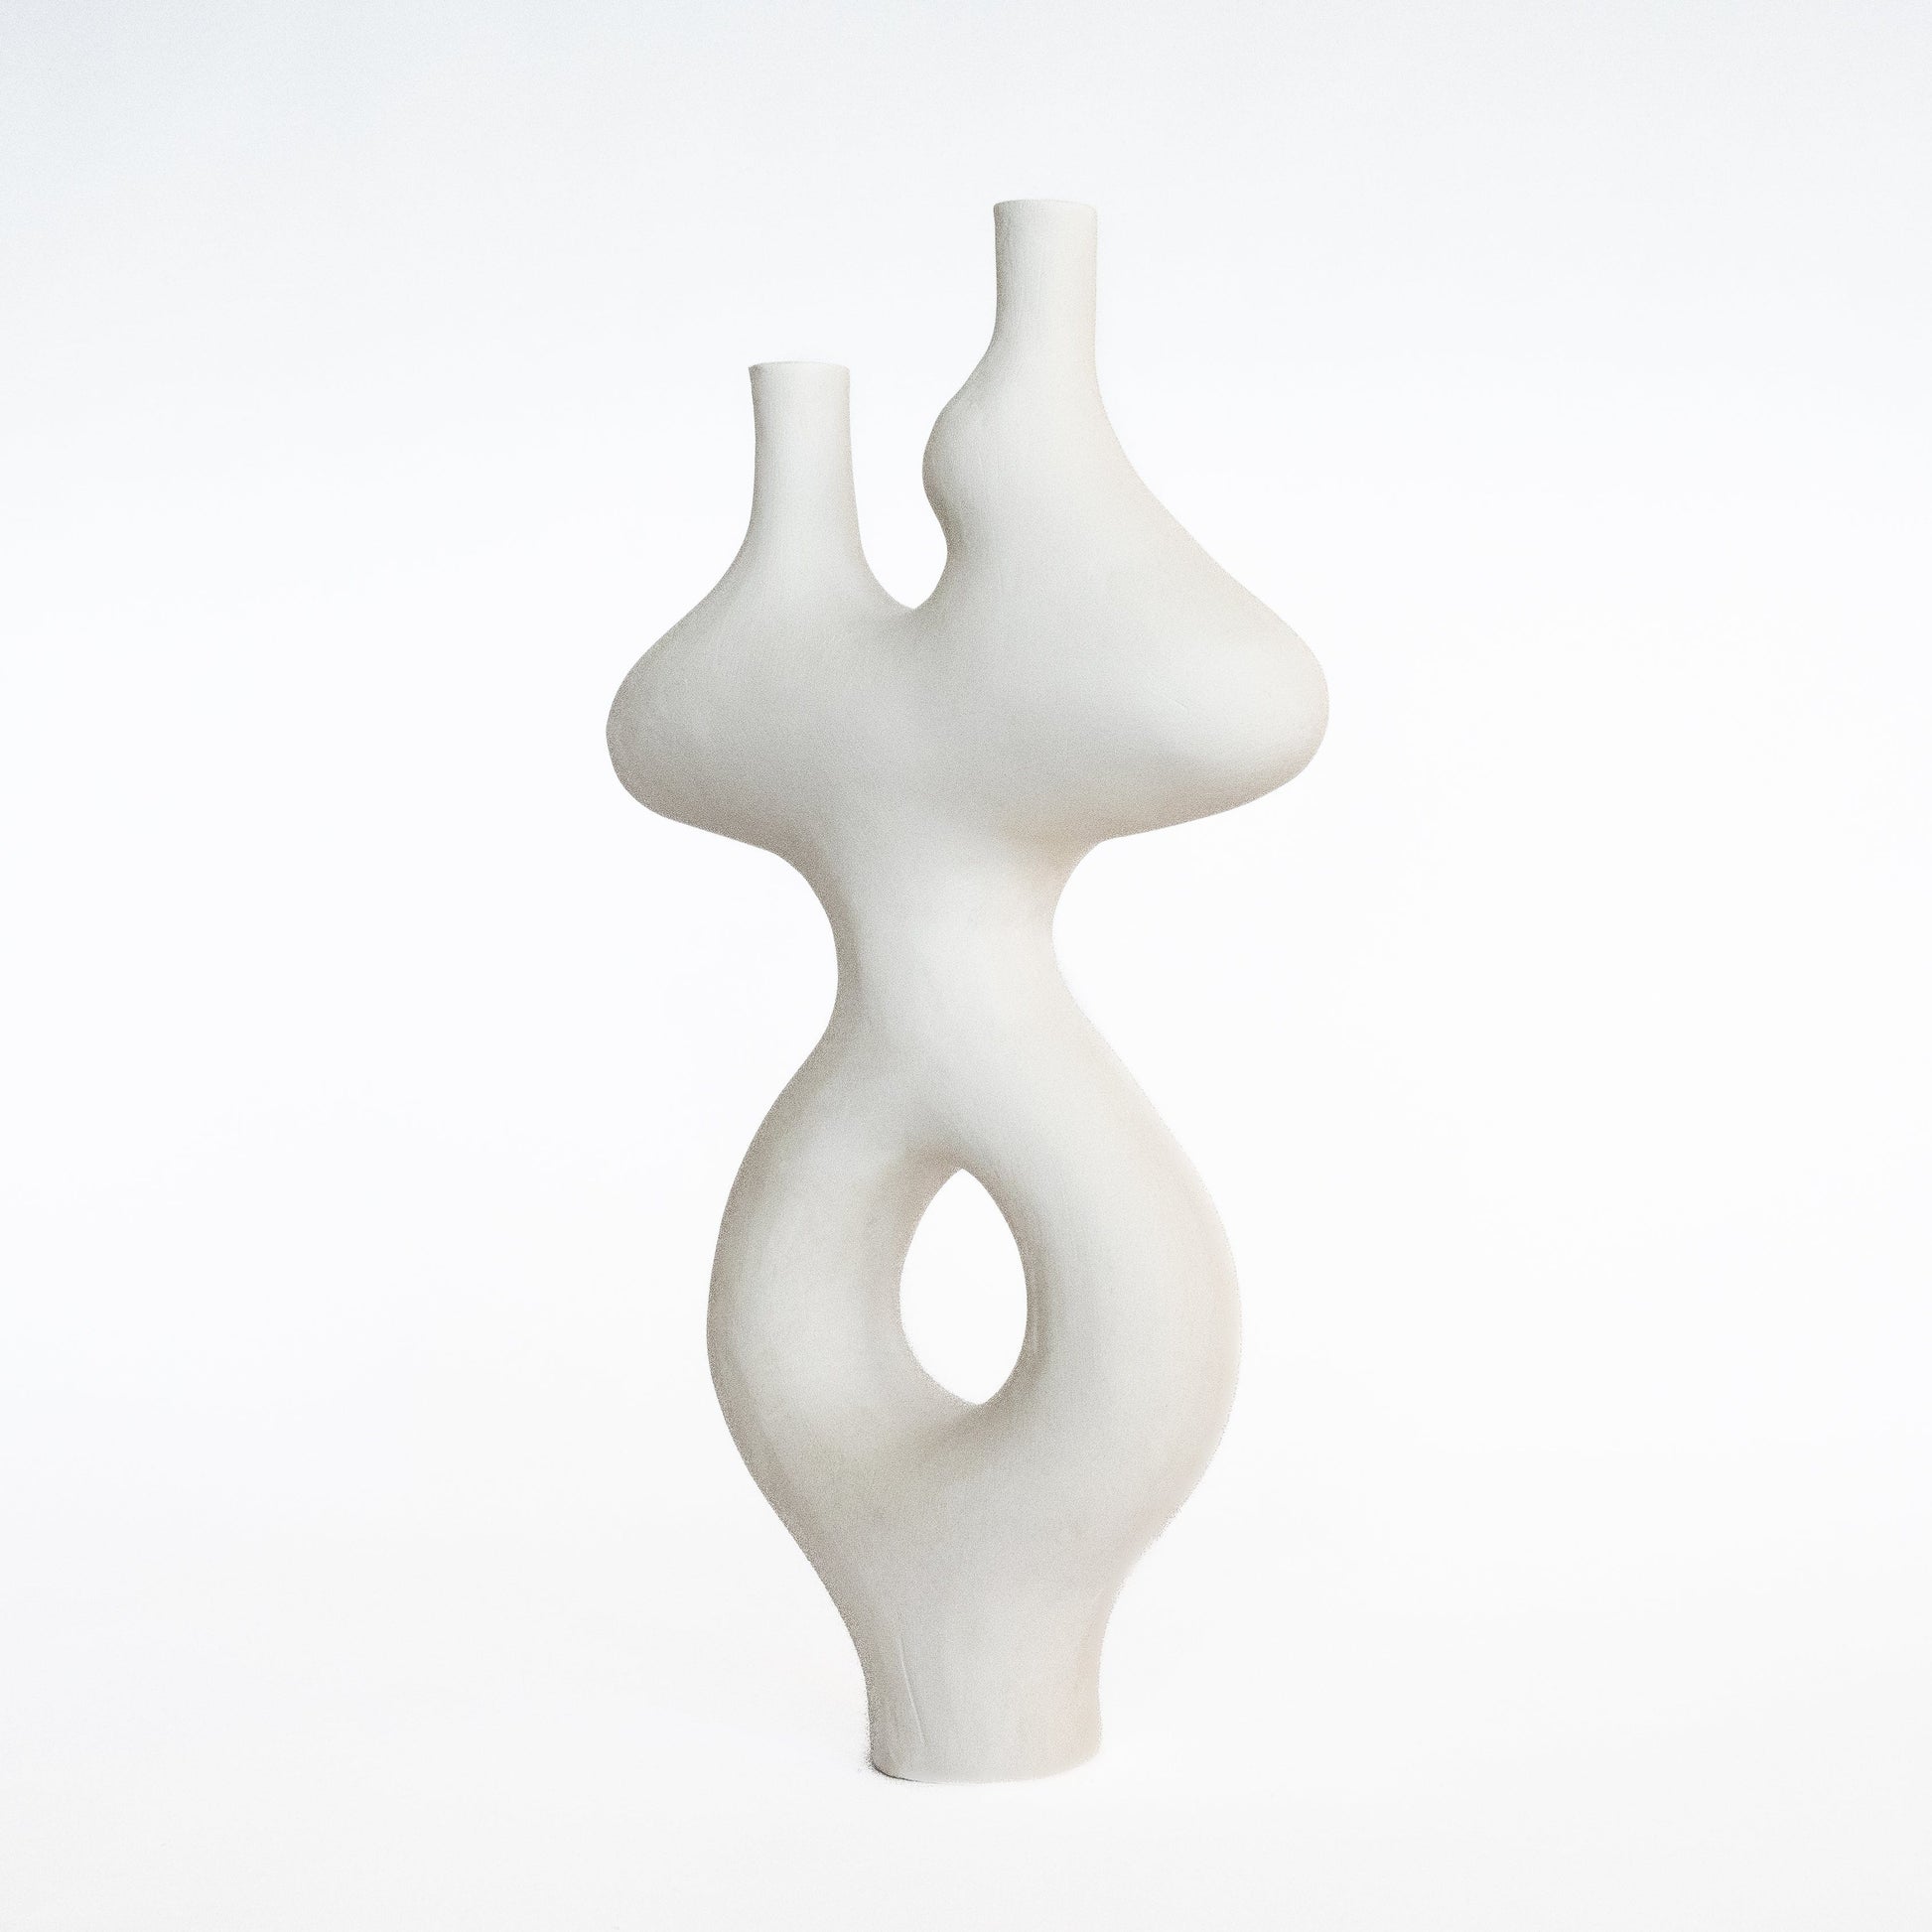 Form Vase #44 by Whitney Bender